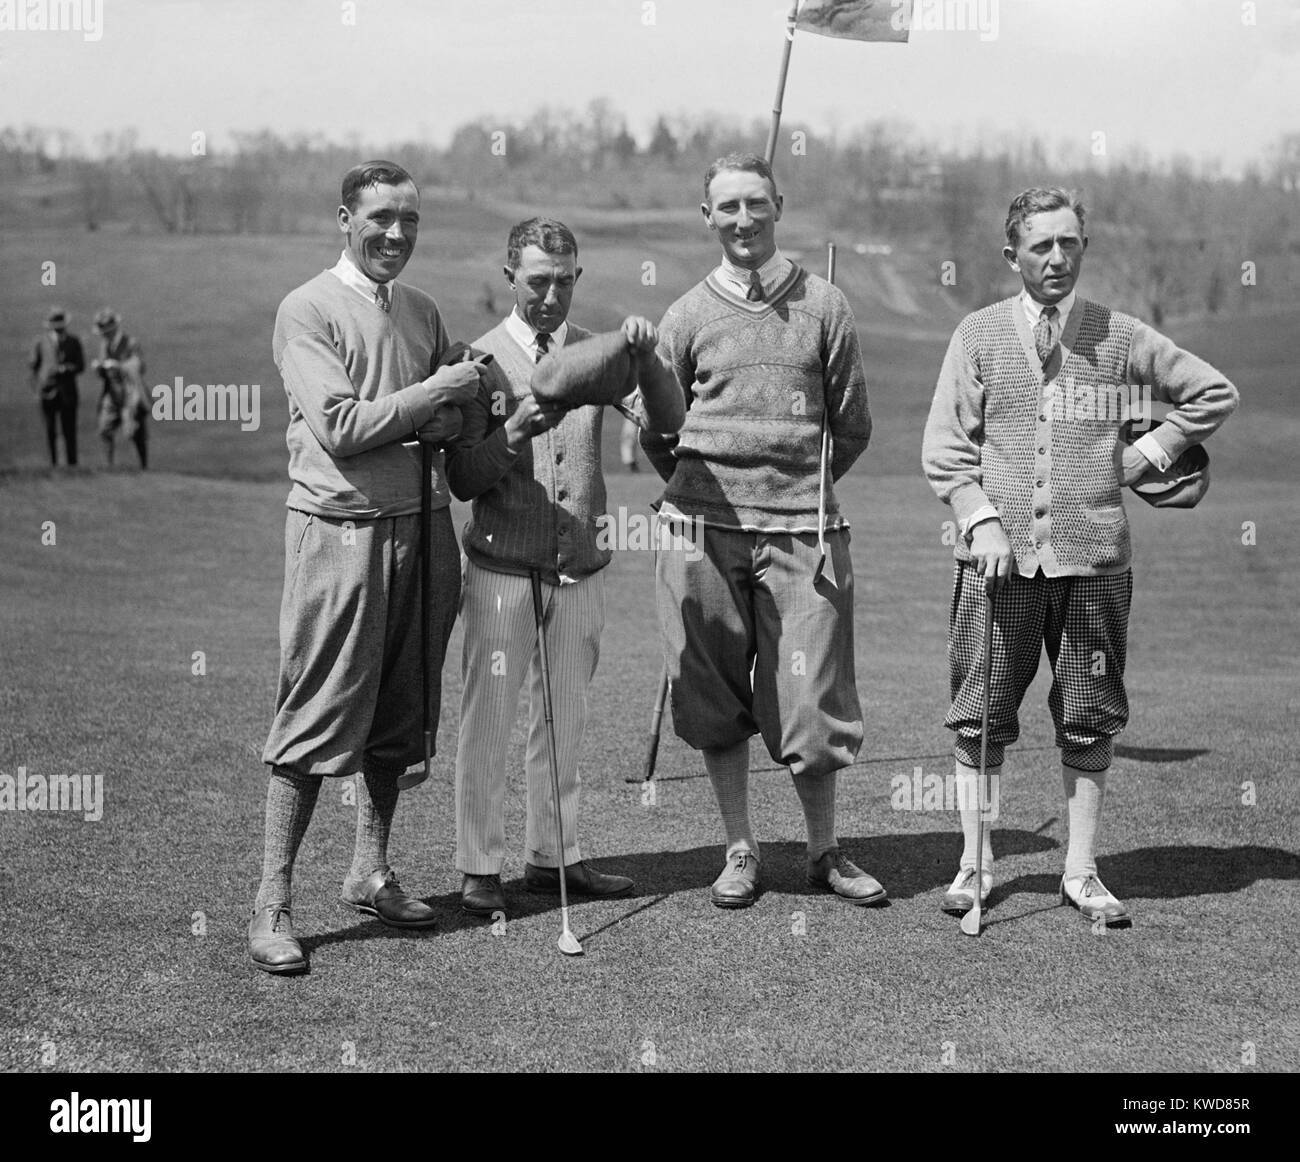 Los golfistas J.W. Ockenden, Fred McLeod, Arthur S. Havers, Jock Hutchison, 22 de abril de 1924. McLeod y Hutchison fueron jugadores profesionales y posteriormente incorporado al Salón de la Fama de la PGA. Washington, D.C. cercanías (BSLOC 2015 17 110) Foto de stock